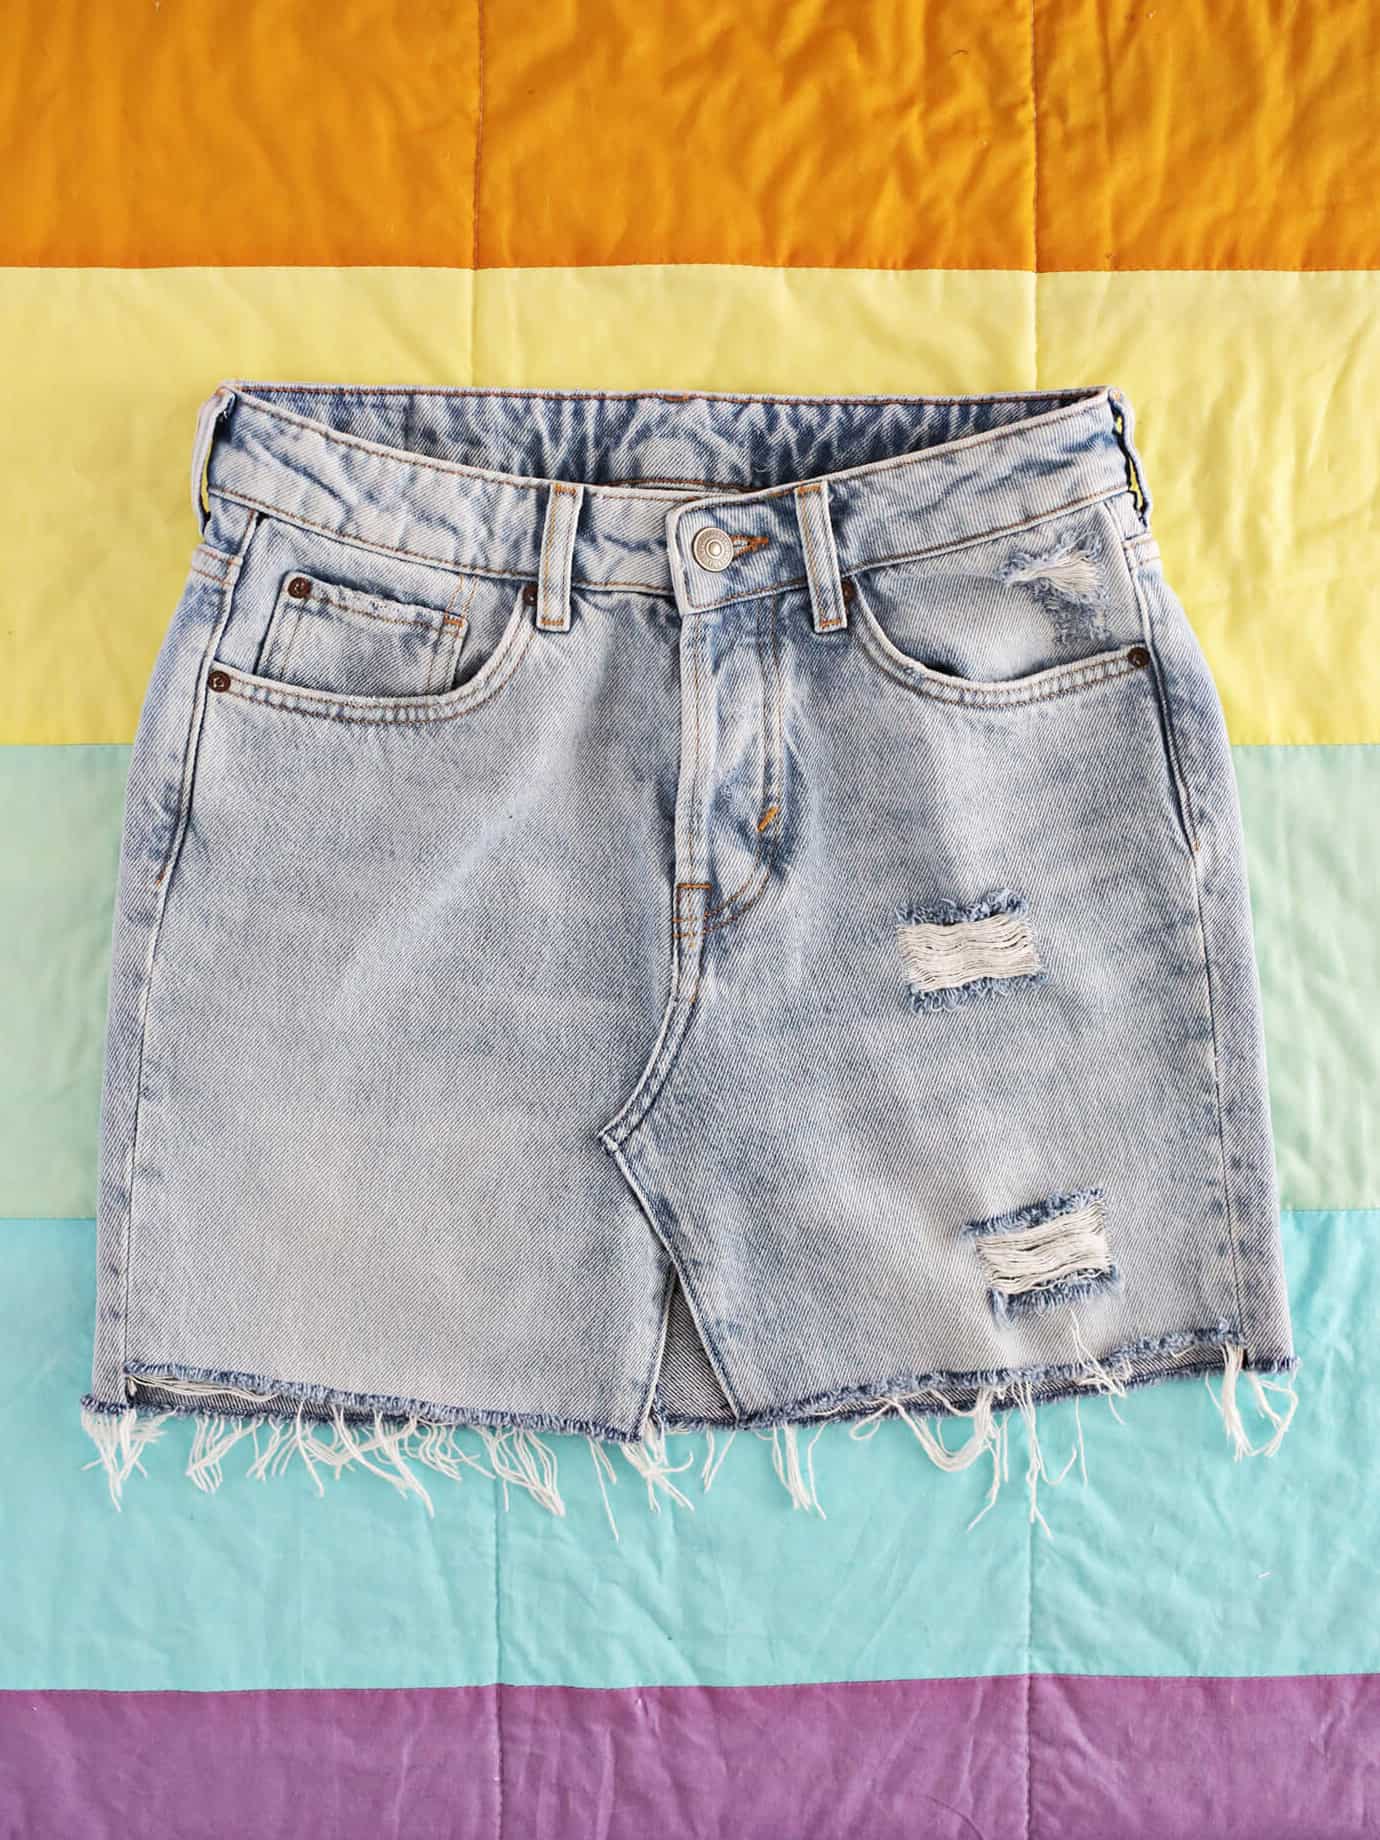 jeans to denim skirt